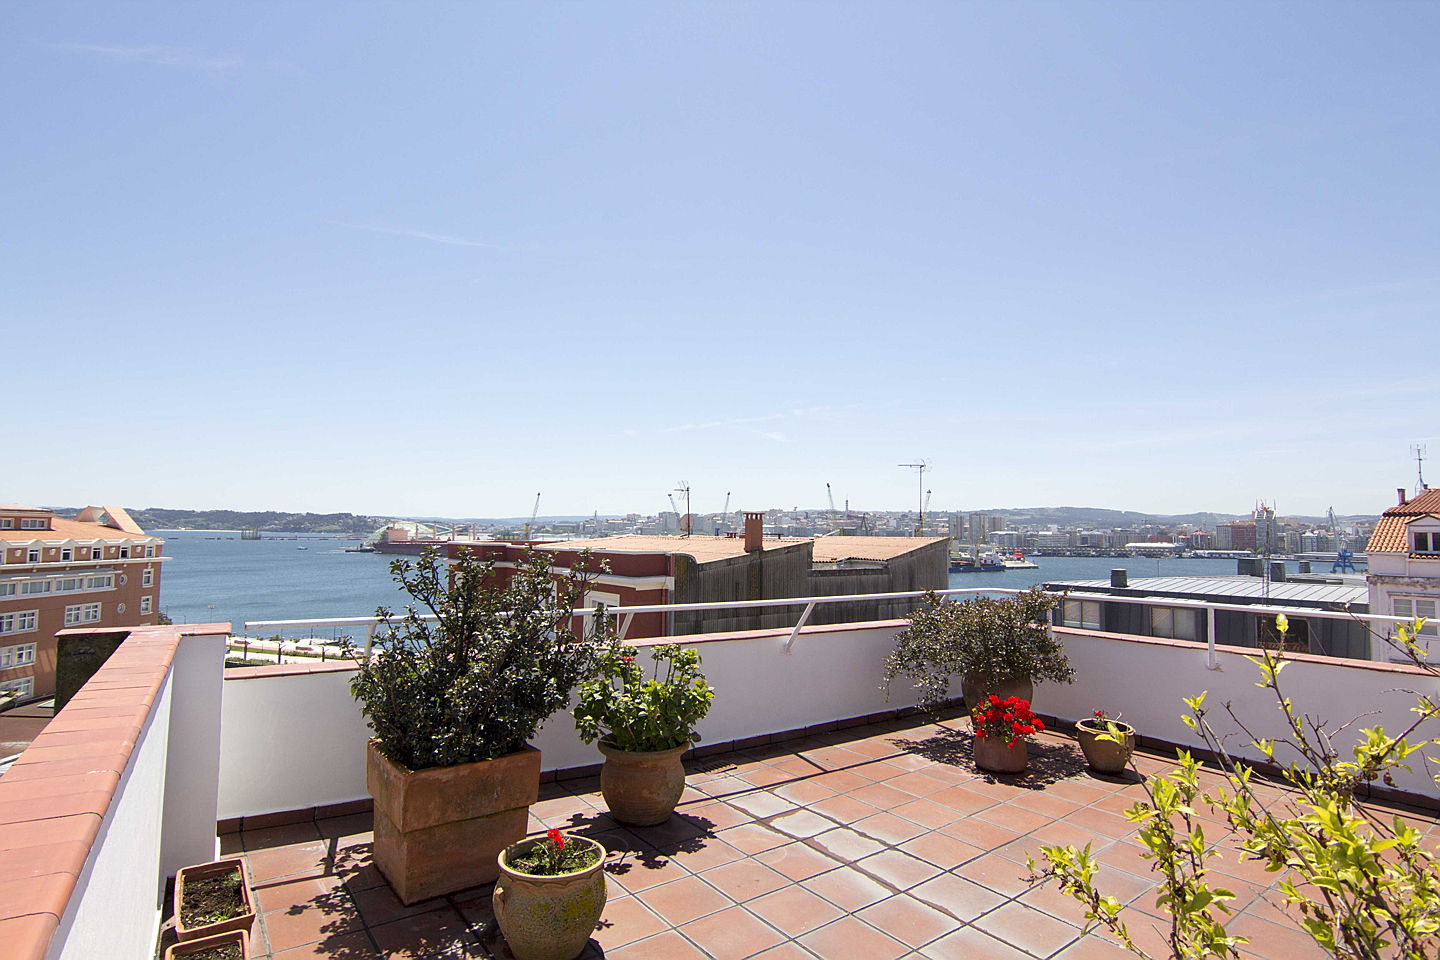  La Coruña, España
- Ático-dúplex en el Parrote con terraza, alquilado por Engel & Völkers La Coruña.JPG